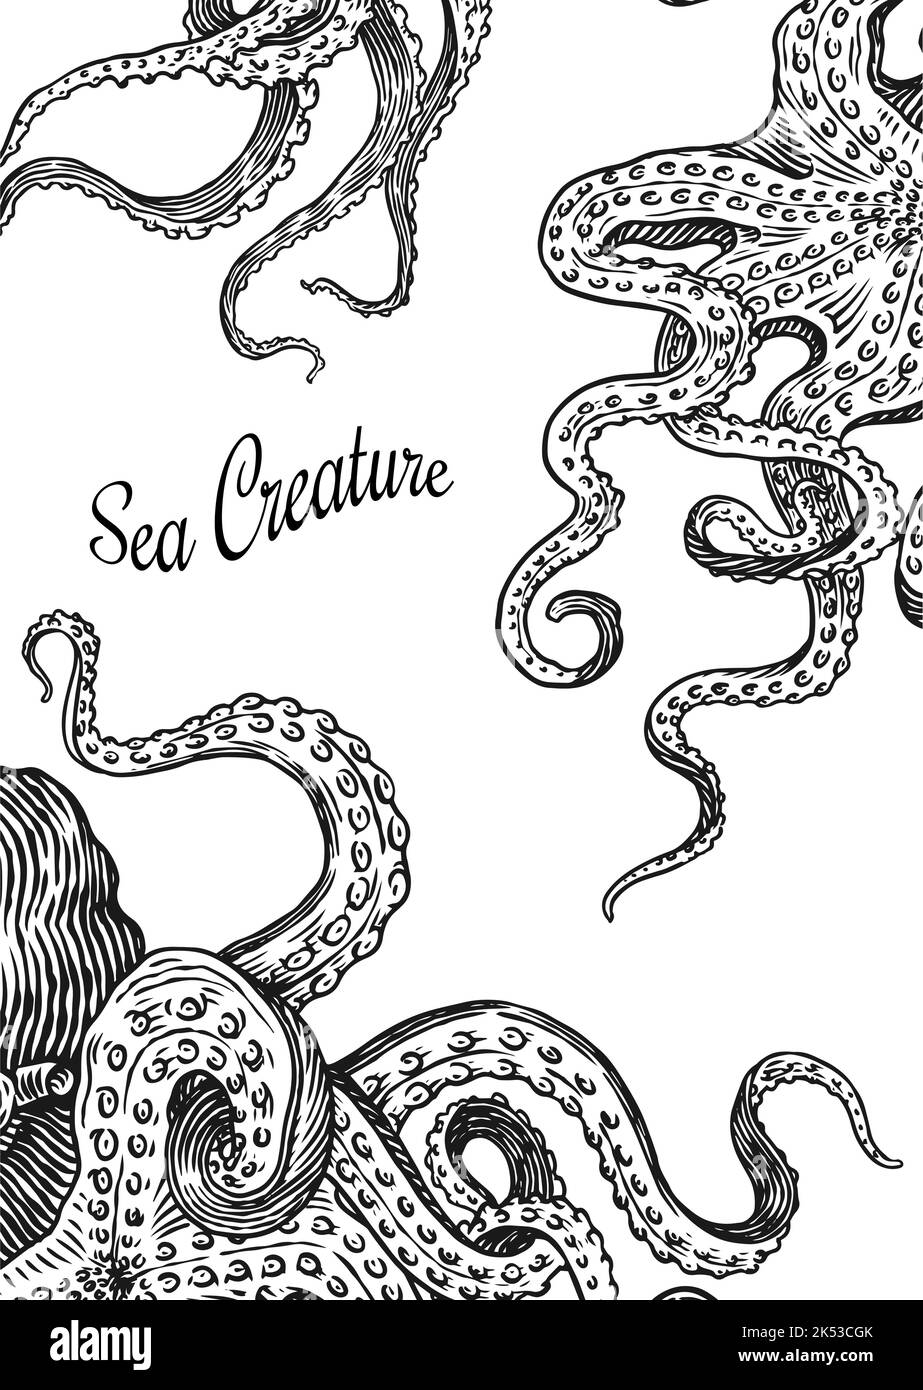 Meereskrake Hintergrund. Eingraviert von Hand gezeichnet in alter Skizze, Vintage Kreatur. Nautisch oder marine, Monster. Tier im Ozean. Vorlage für Logos Stock Vektor